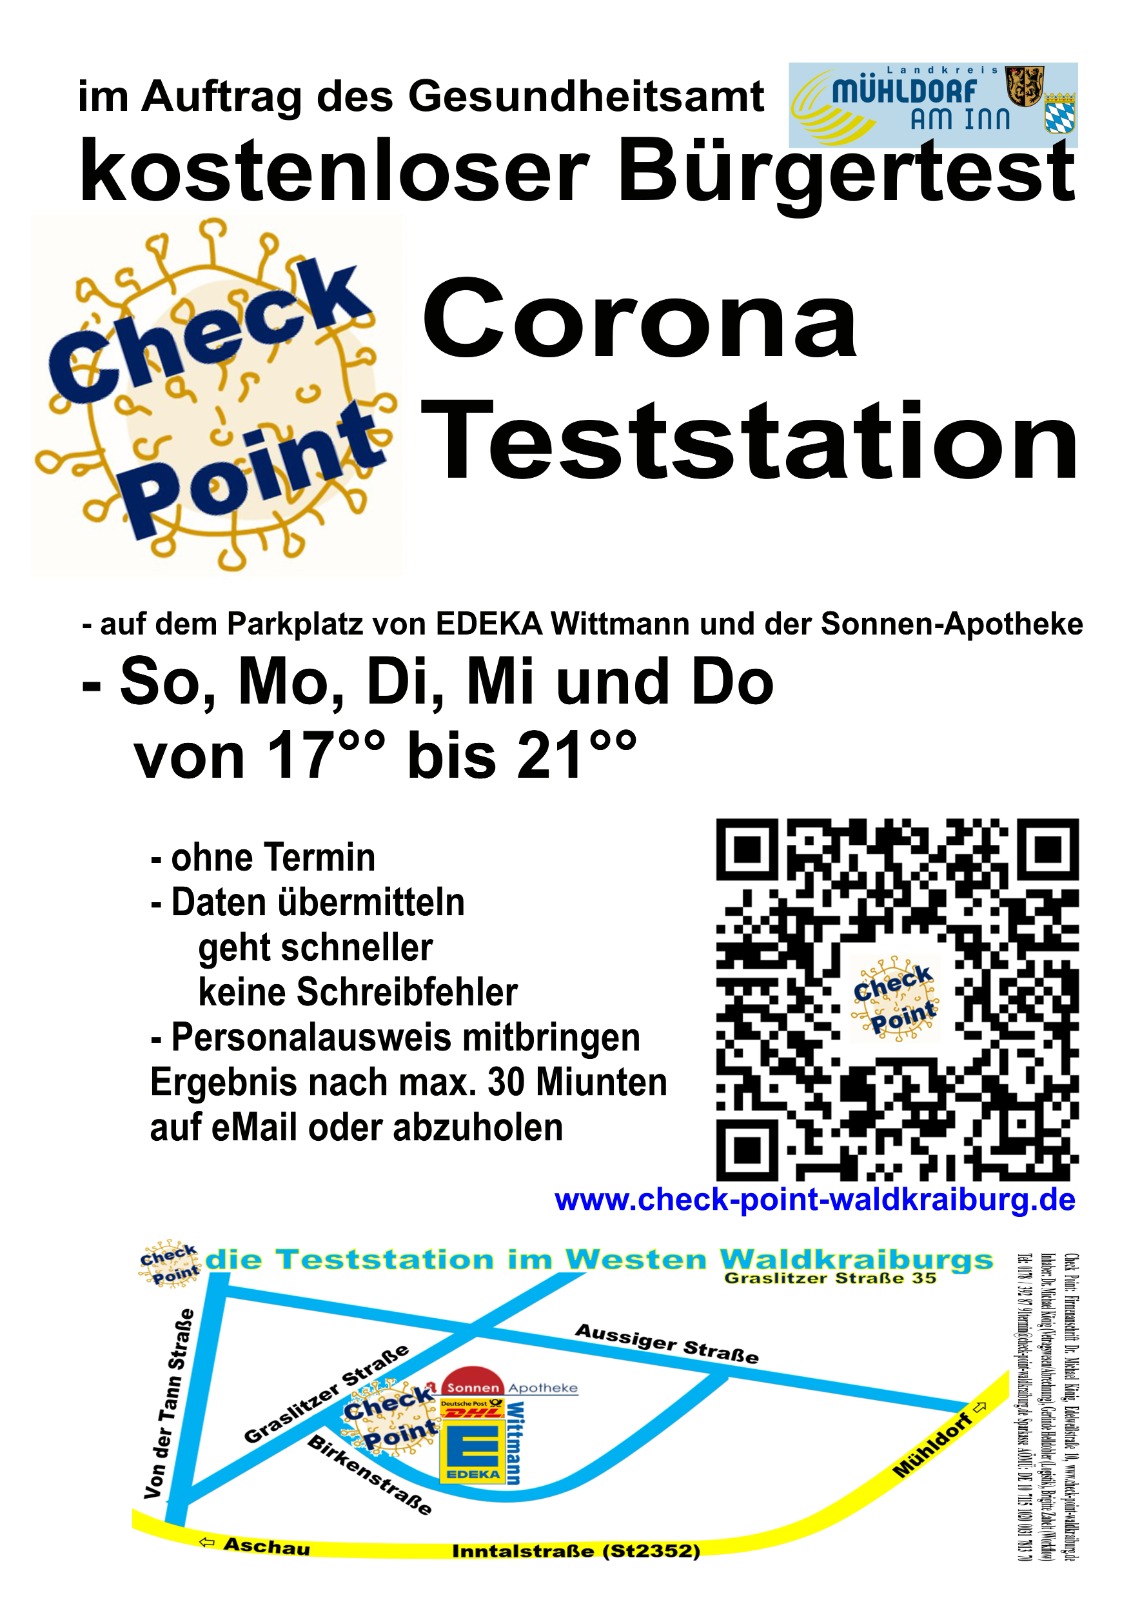 Corona-Krise: Teststation eröffnet – Kostenloser „Bürgertest“ am „Check Point Waldkraiburg“